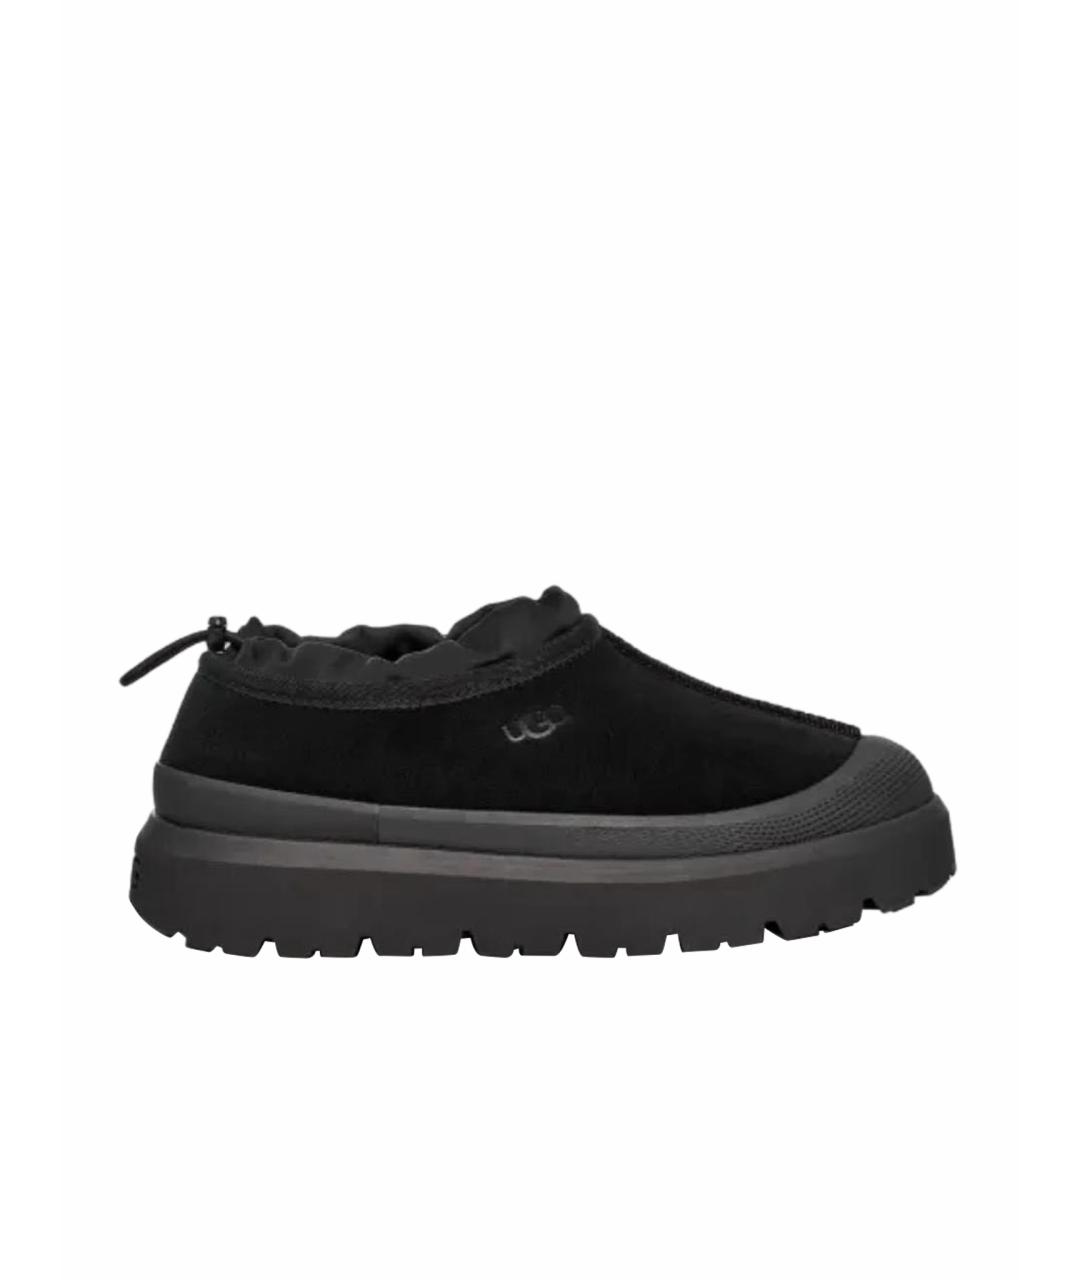 UGG AUSTRALIA Черные замшевые низкие ботинки, фото 1